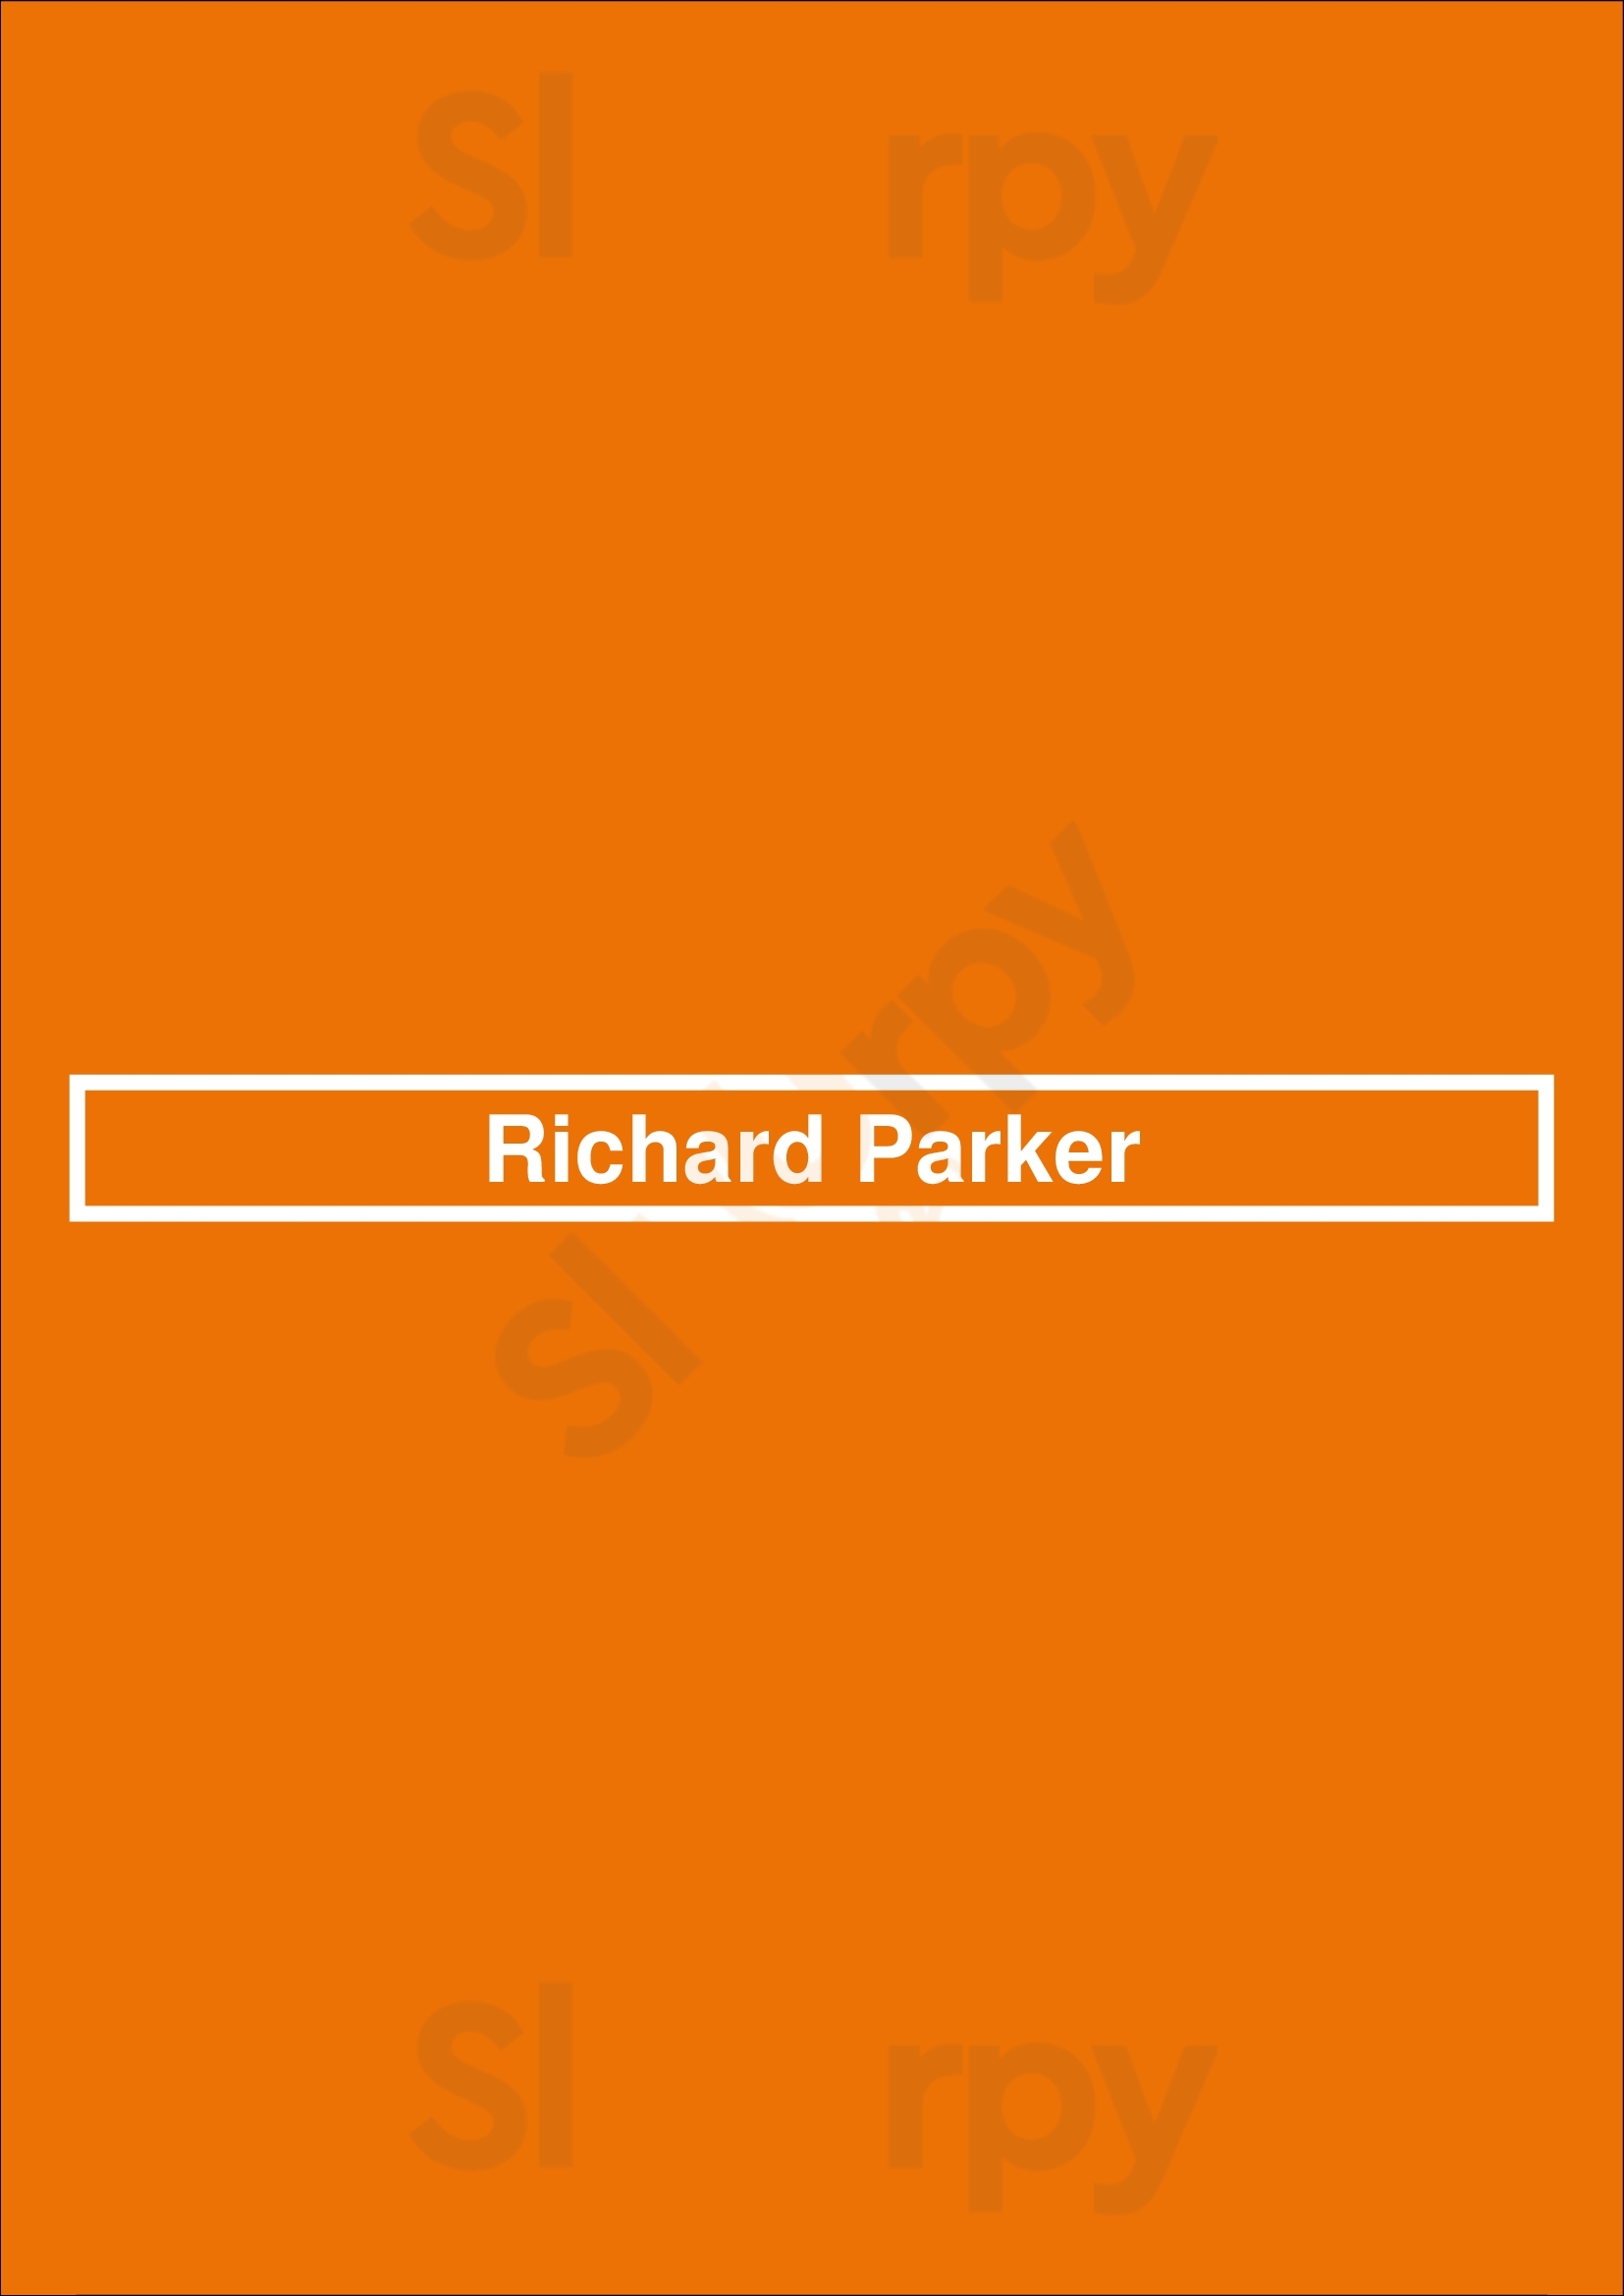 Richard Parker Buenos Aires Menu - 1